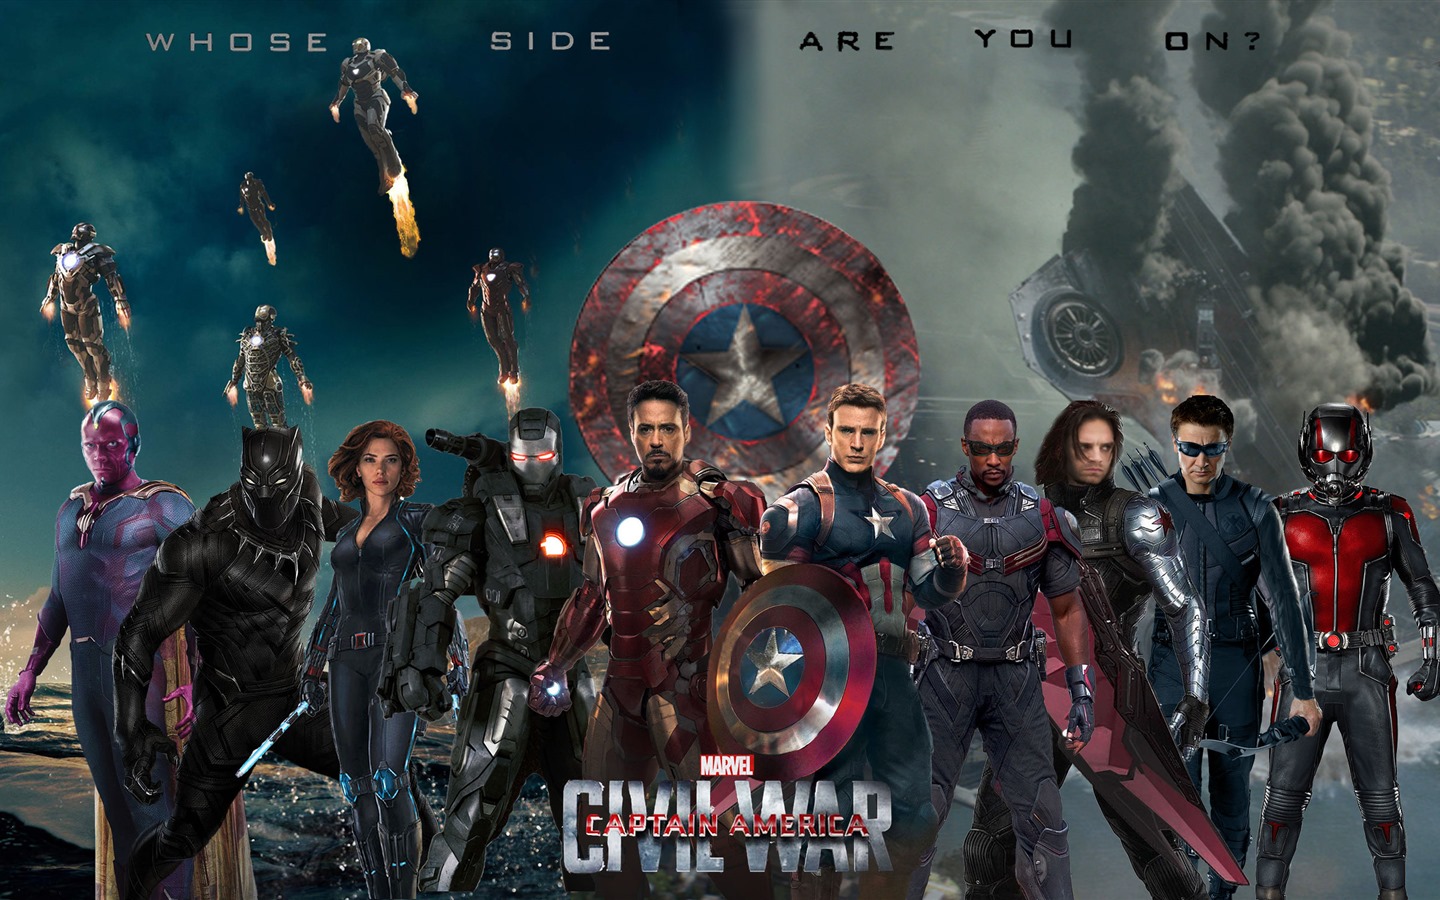 Capitán América: guerra civil, fondos de pantalla de alta definición de películas #11 - 1440x900